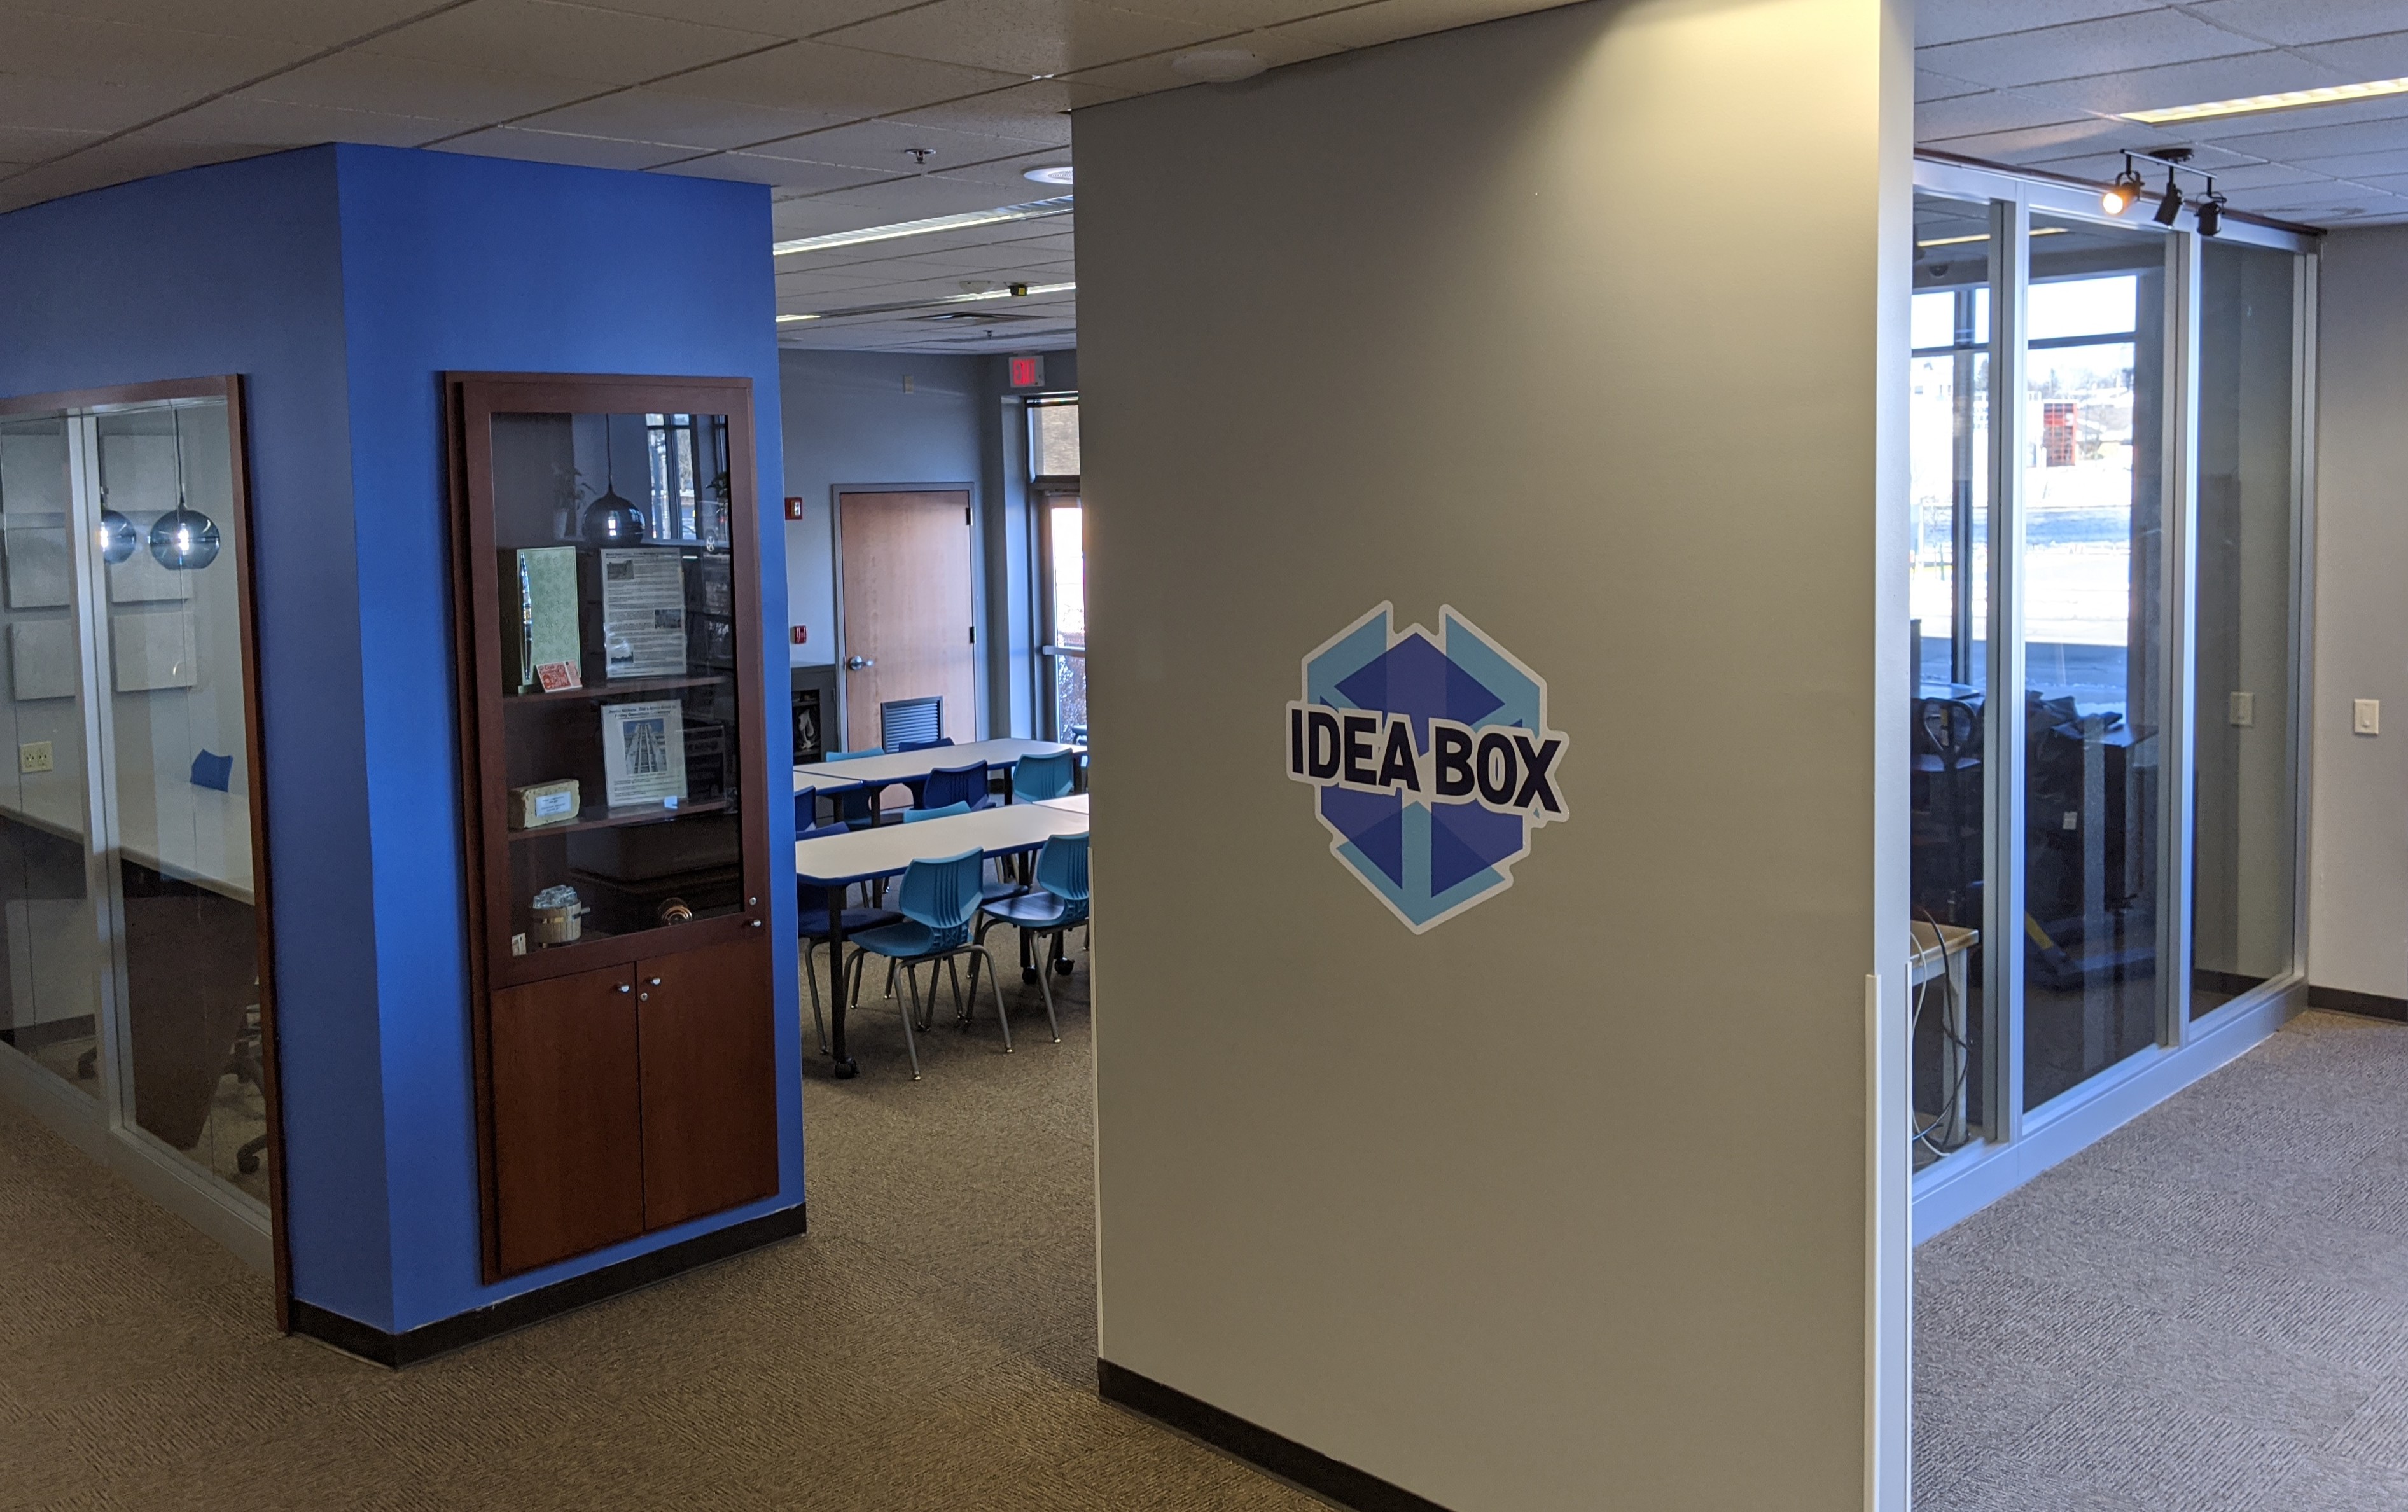 Idea Box entrance with logo on wall